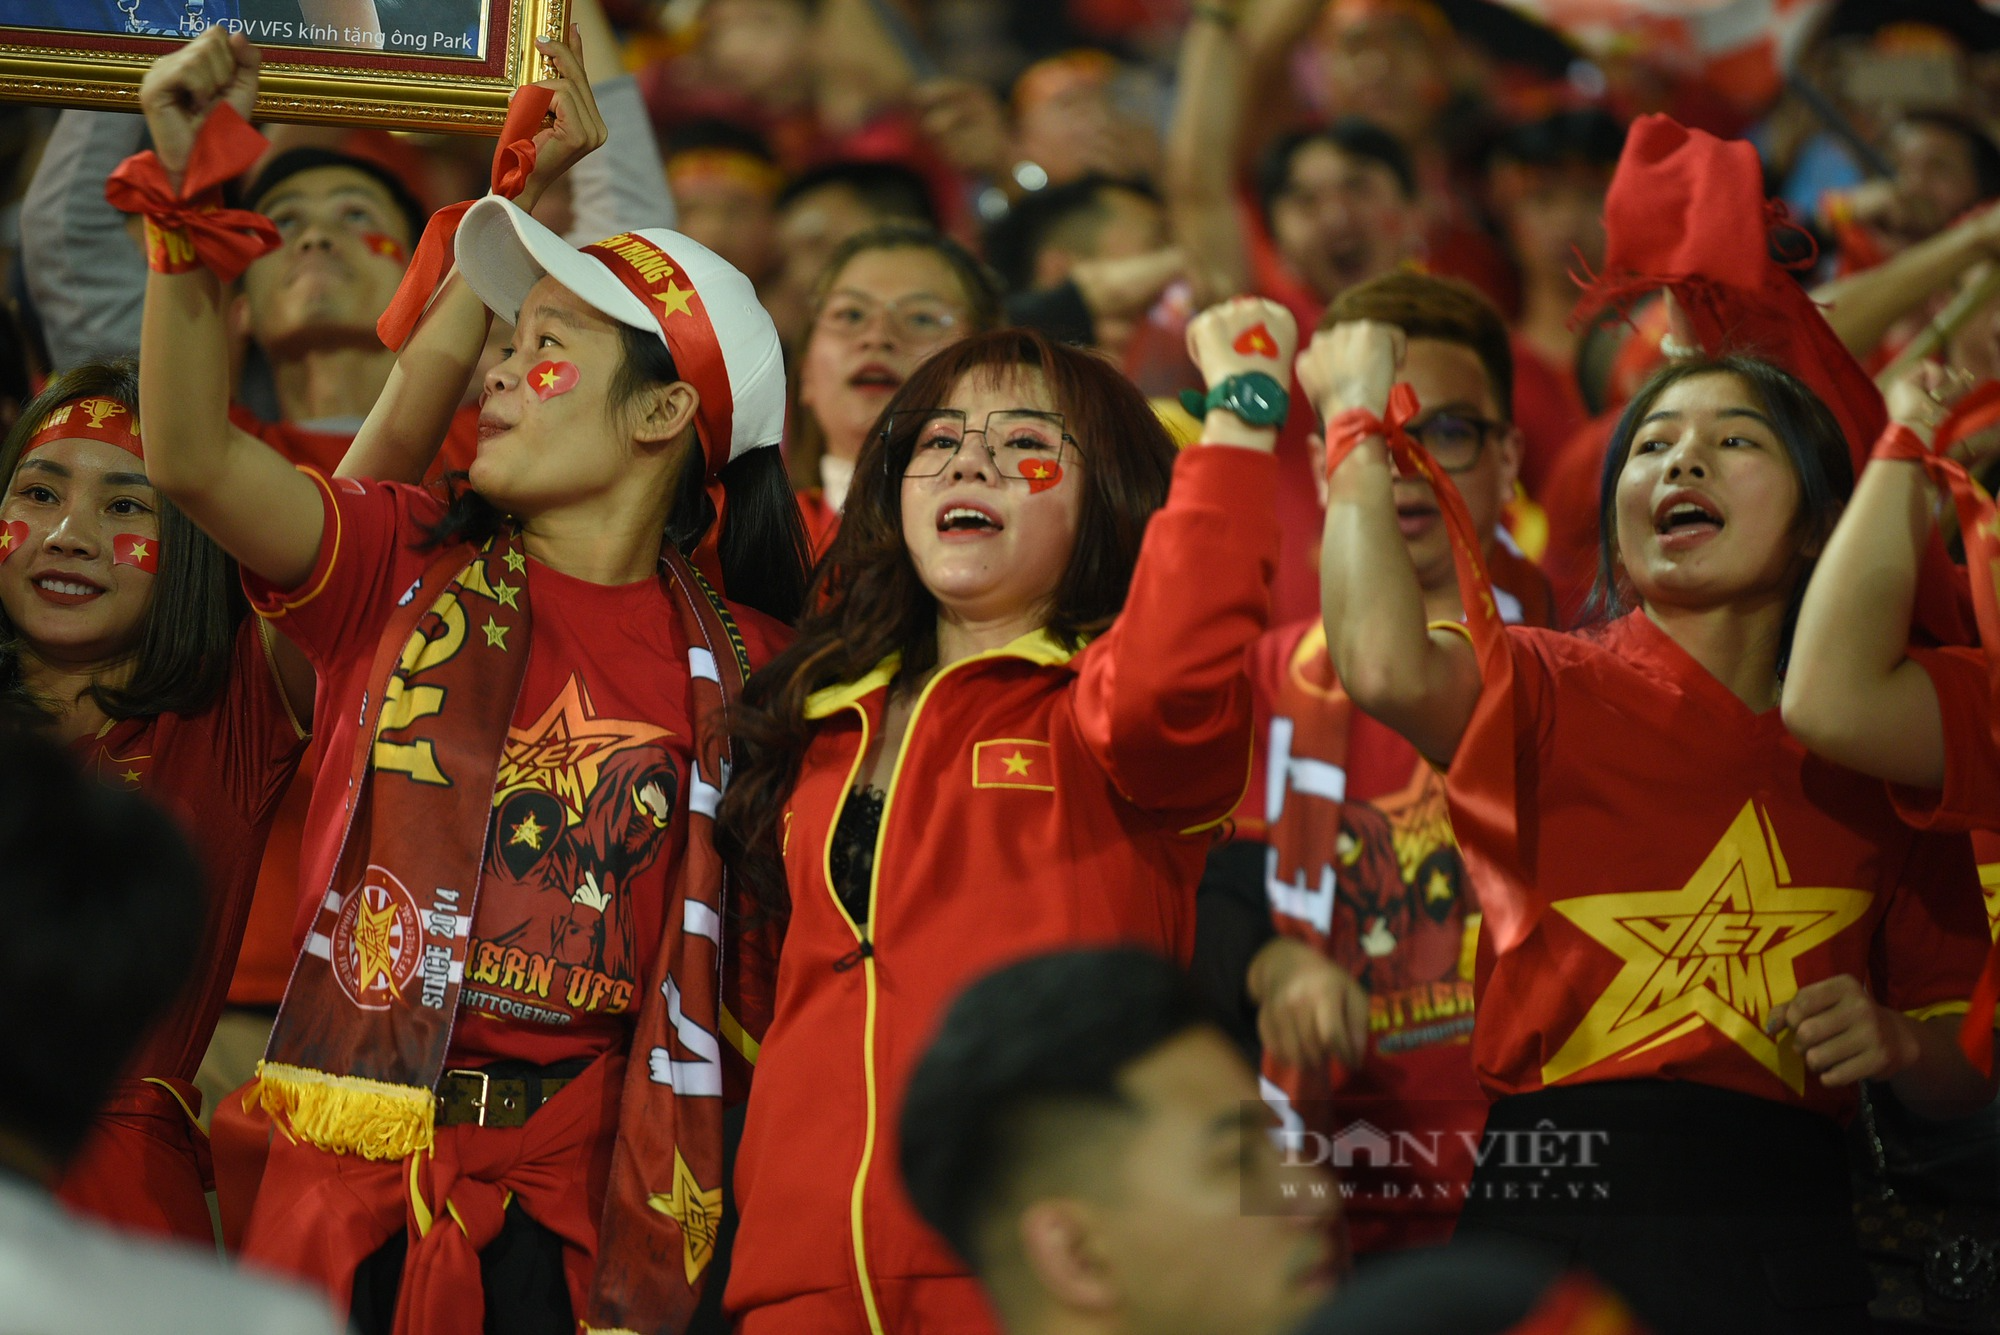 CĐV ăn mừng kiểu Viking sau khi đội tuyển Việt Nam giành quyền vào chơi chung kết AFF Cup 2022 - Ảnh 2.